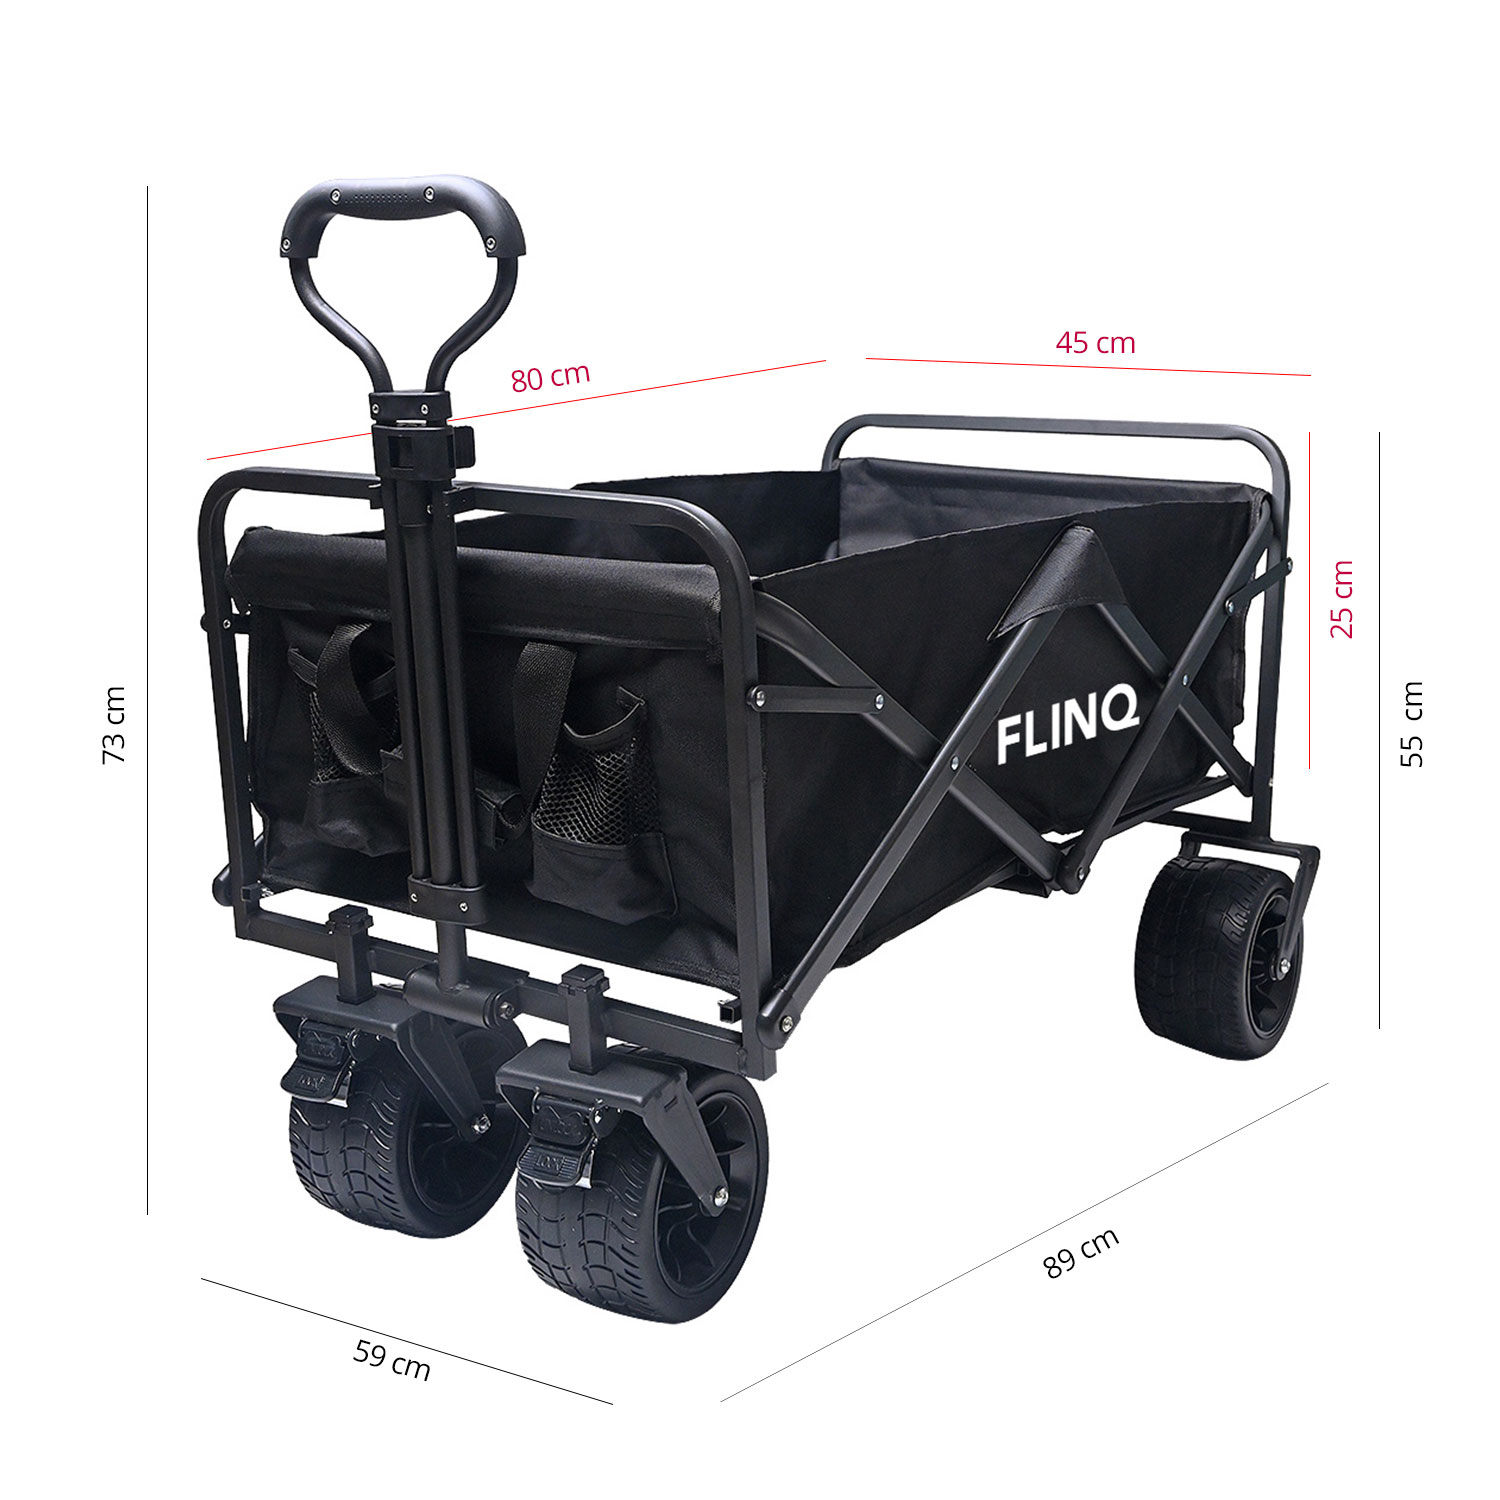 FlinQ-Folding-Wagon-1